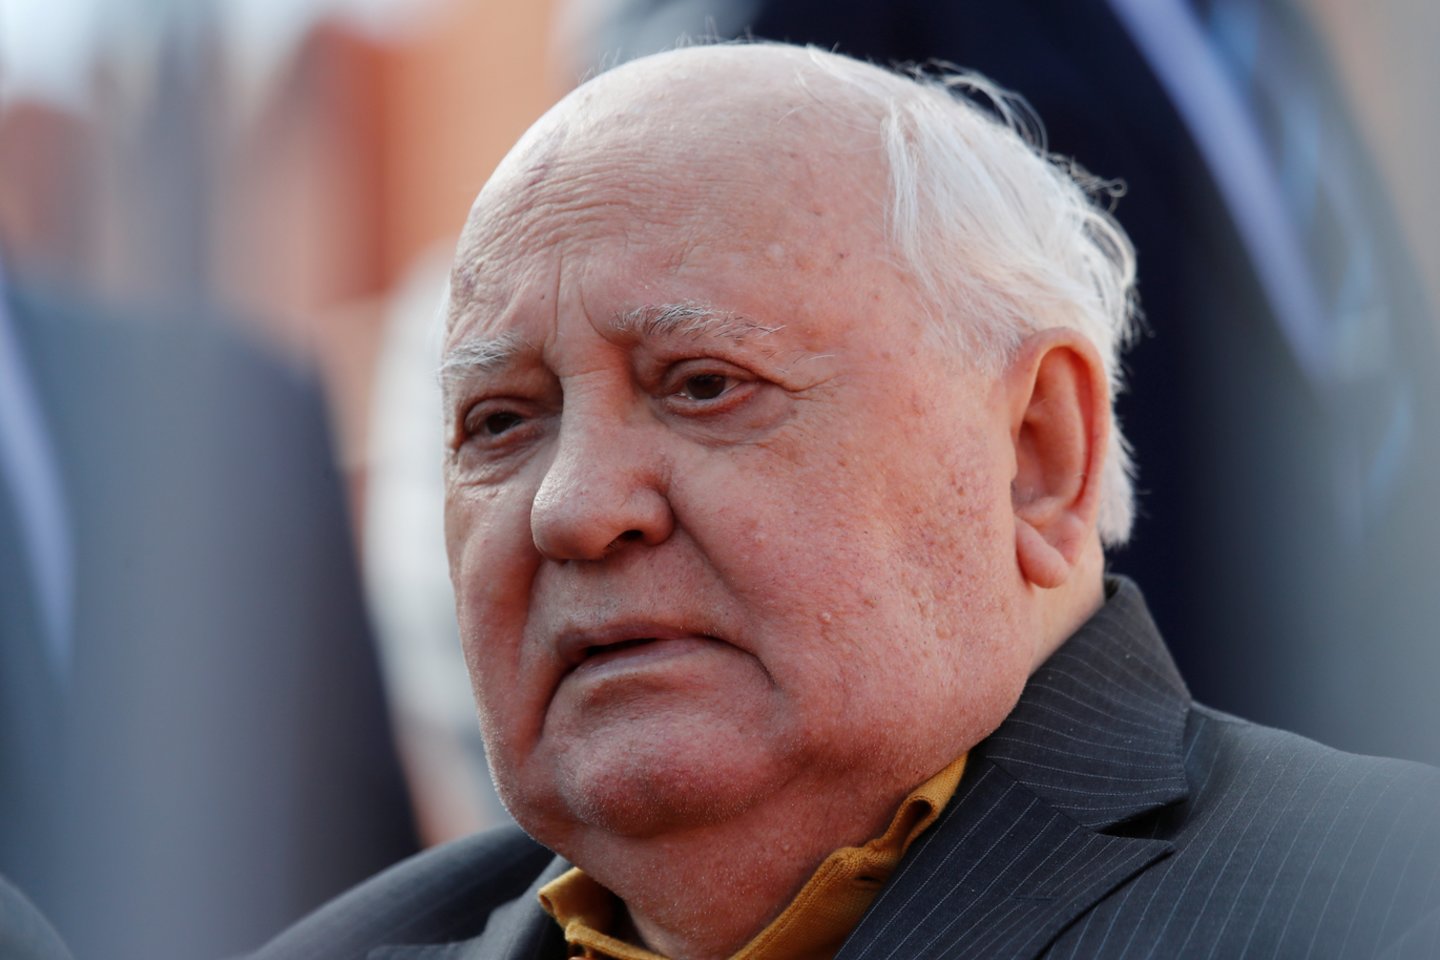  Buvęs Sovietų sąjungos lyderis Michailas Gorbačiovas paguldytas į ligoninę.<br> „Reuters"/„Scanpix" nuotr.